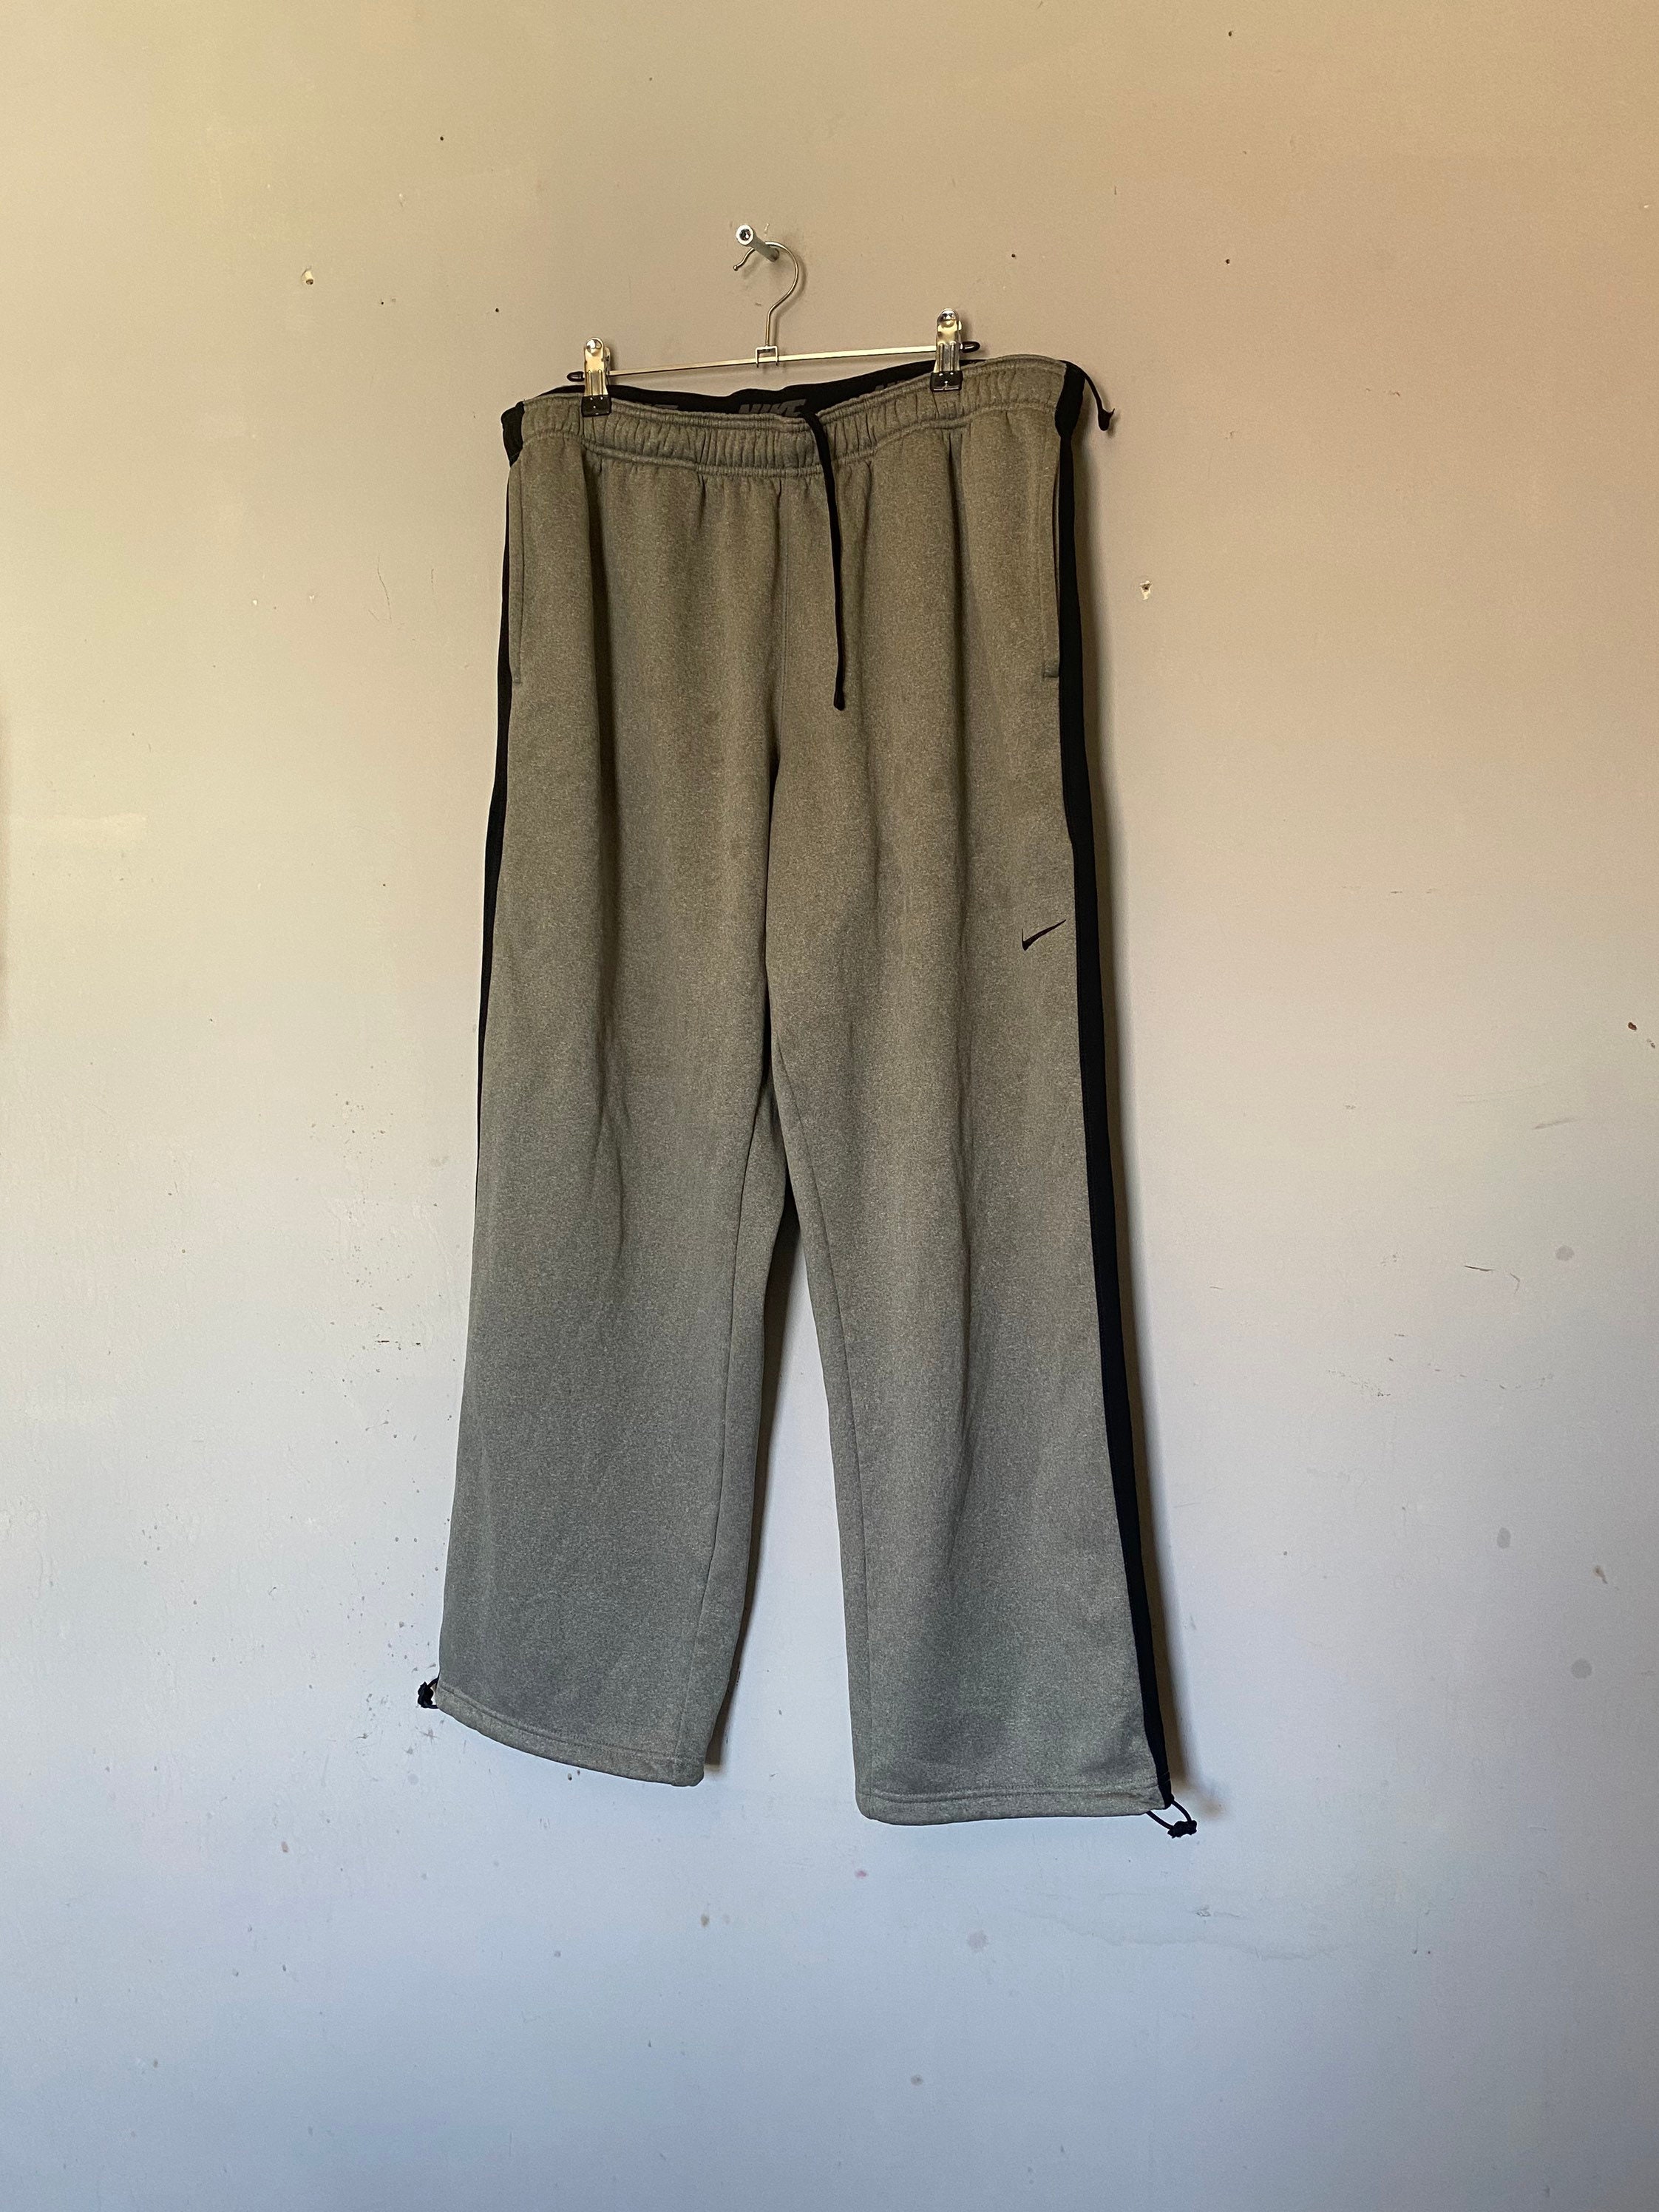 Vintage Nike Pants / Sweat / Track Suit Pants / Jogging | Etsy